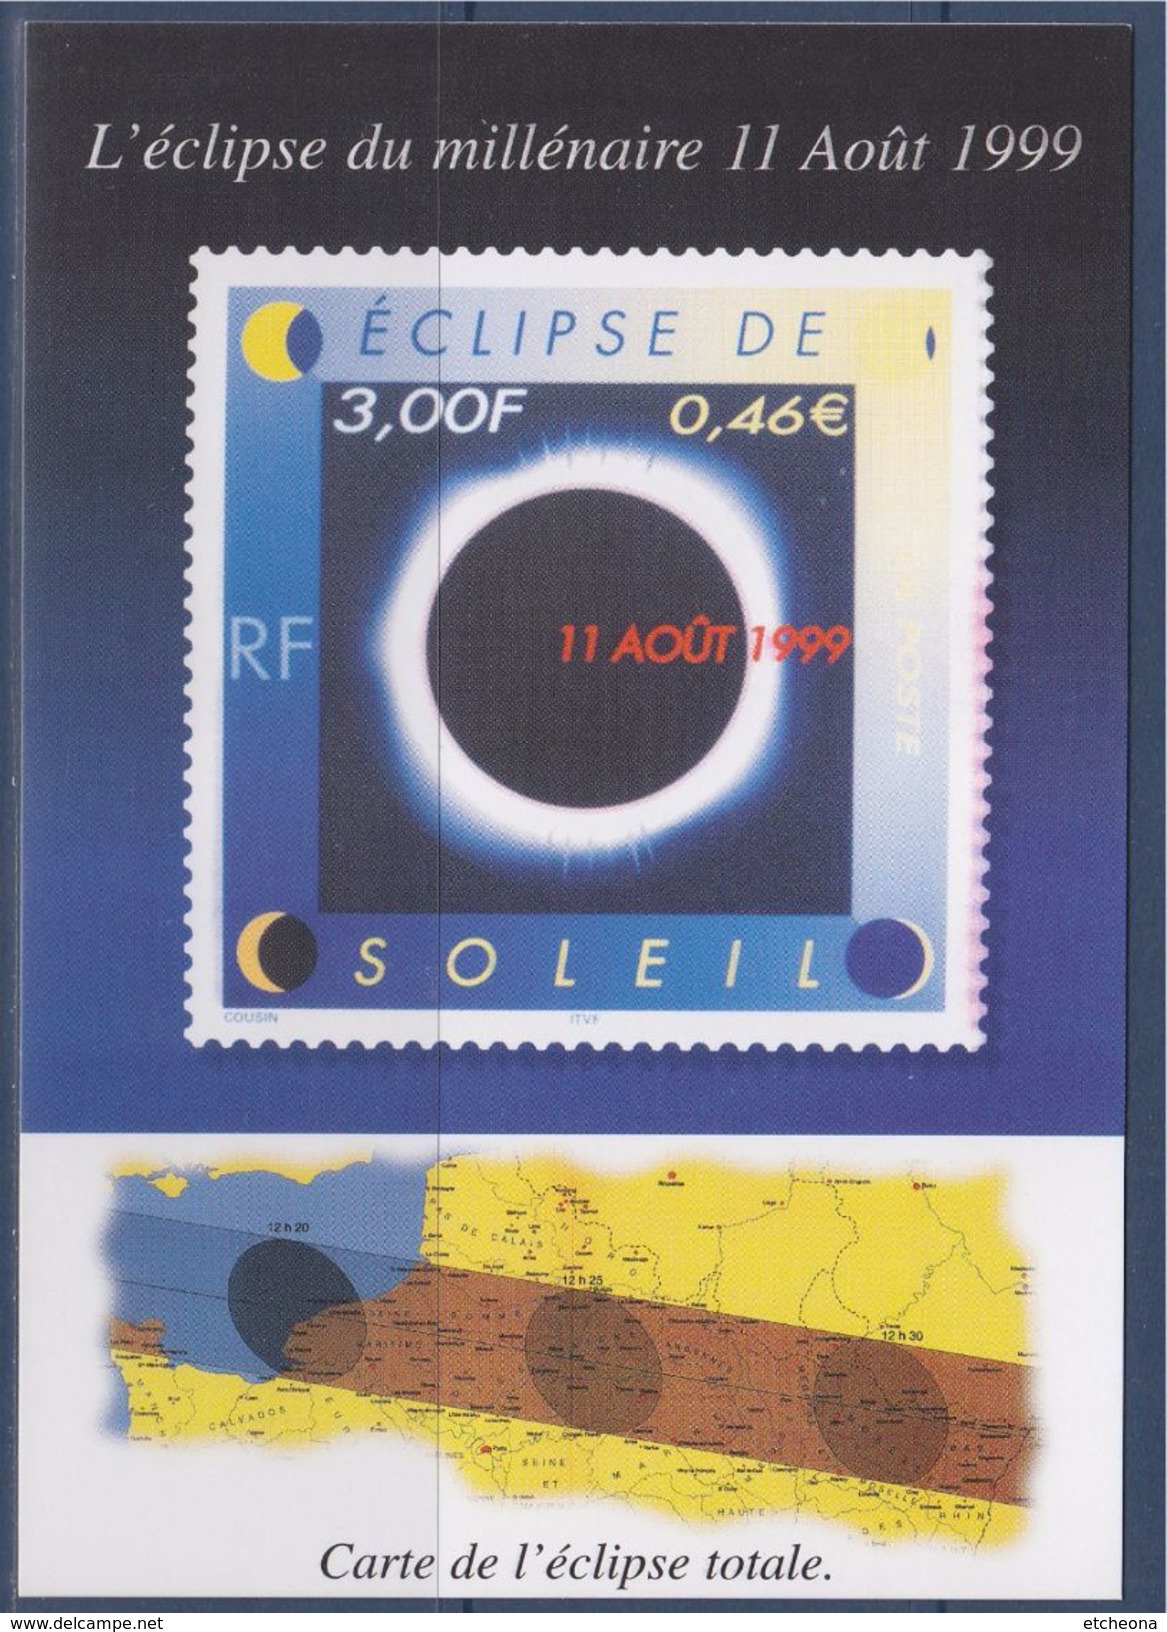 = Eclipse Du Millénaire 11 Août 1999, Carte Postale Reprise Timbre 3261 Et Tracé Sur La Carte - Astronomie